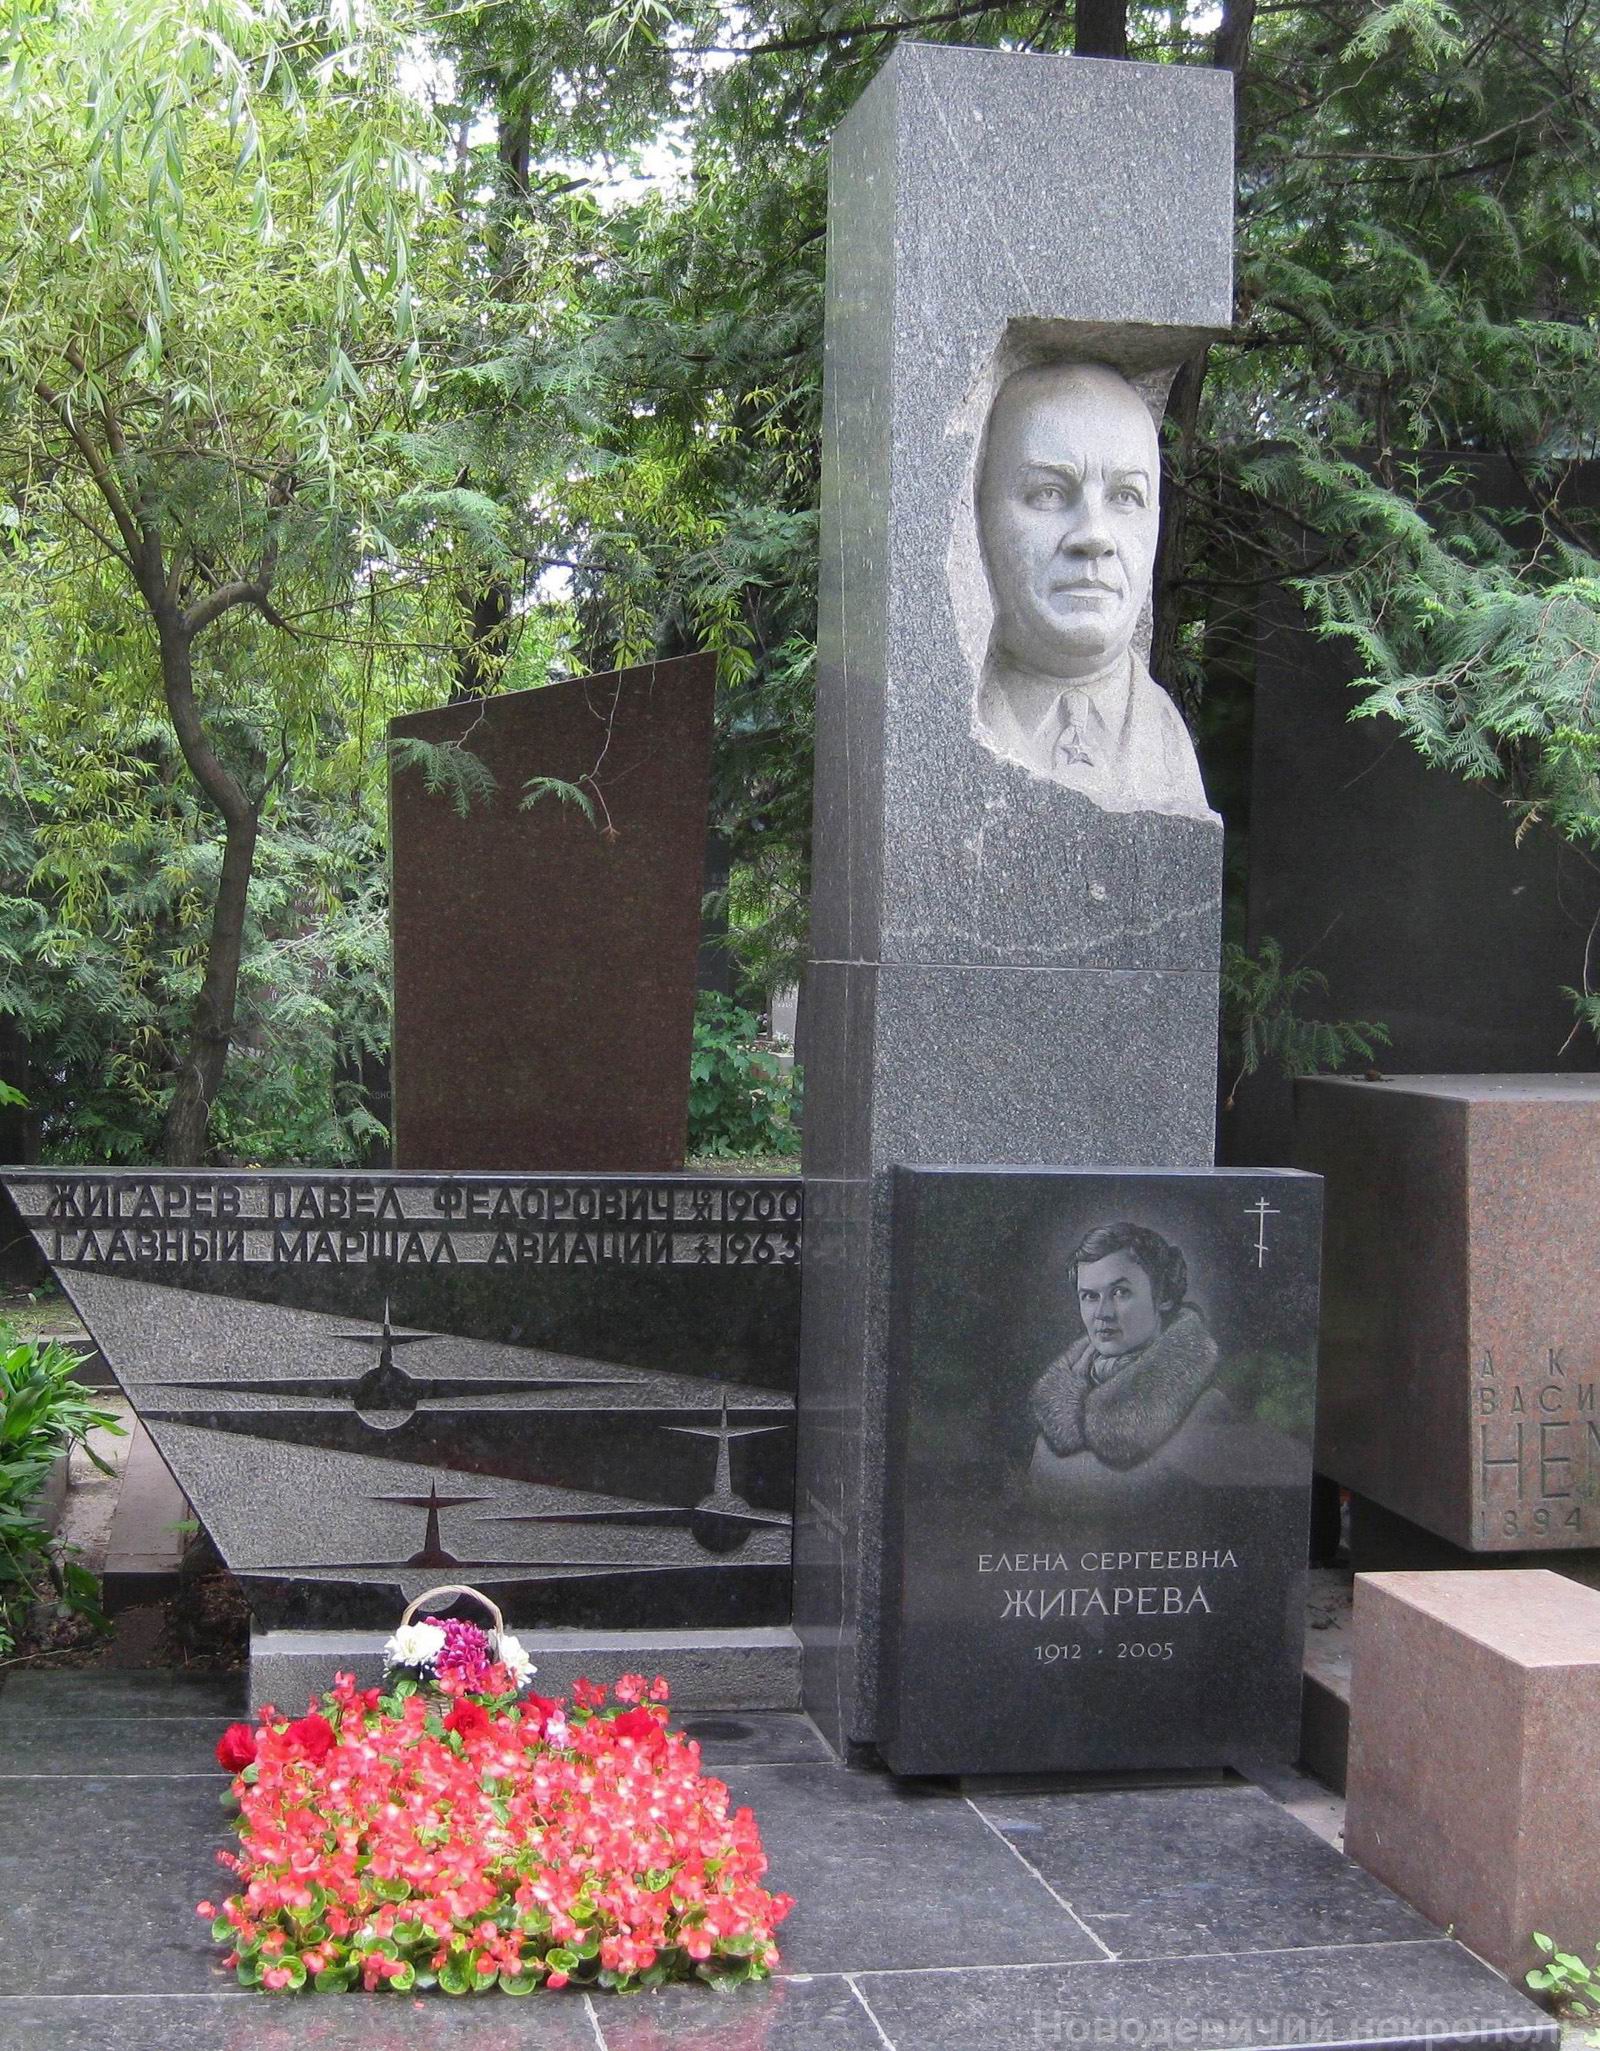 Памятник на могиле Жигарева П.Ф. (1900-1963), ск. И.Рукавишников, арх. Н.Миловидов, на Новодевичьем кладбище (8-33-4).